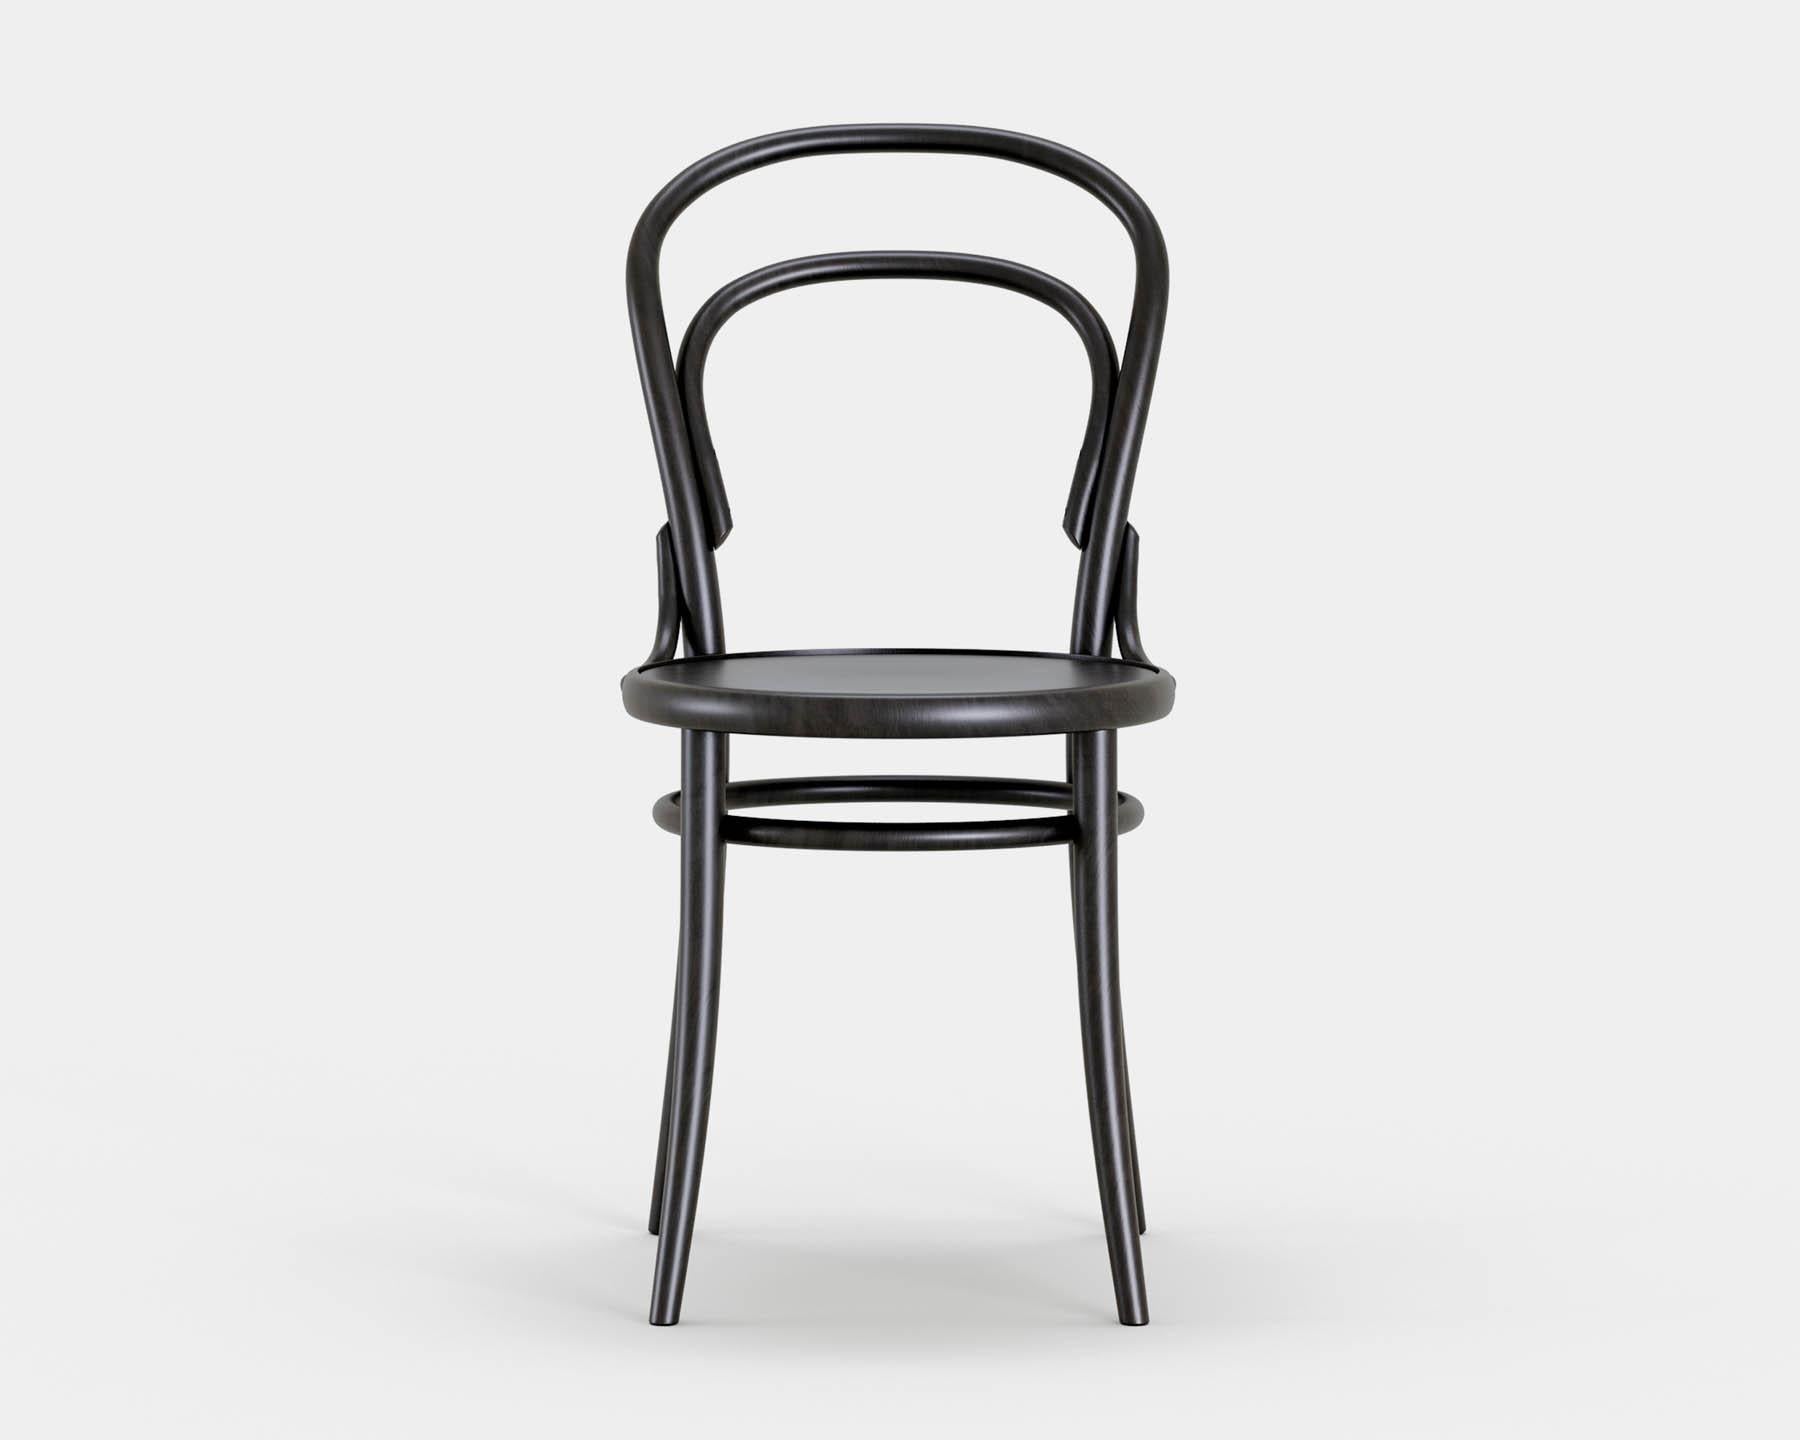 Stuhl Nr. 14
Der ikonische Bistrostuhl wurde 1869 von Michael Thonet entworfen und wird heute in der gleichen Manufaktur in der Tschechischen Republik von TON hergestellt. 

Holz: Buche massiv 
Ausführung: schwarz gebeizt
Sitz: schlichtes Holz